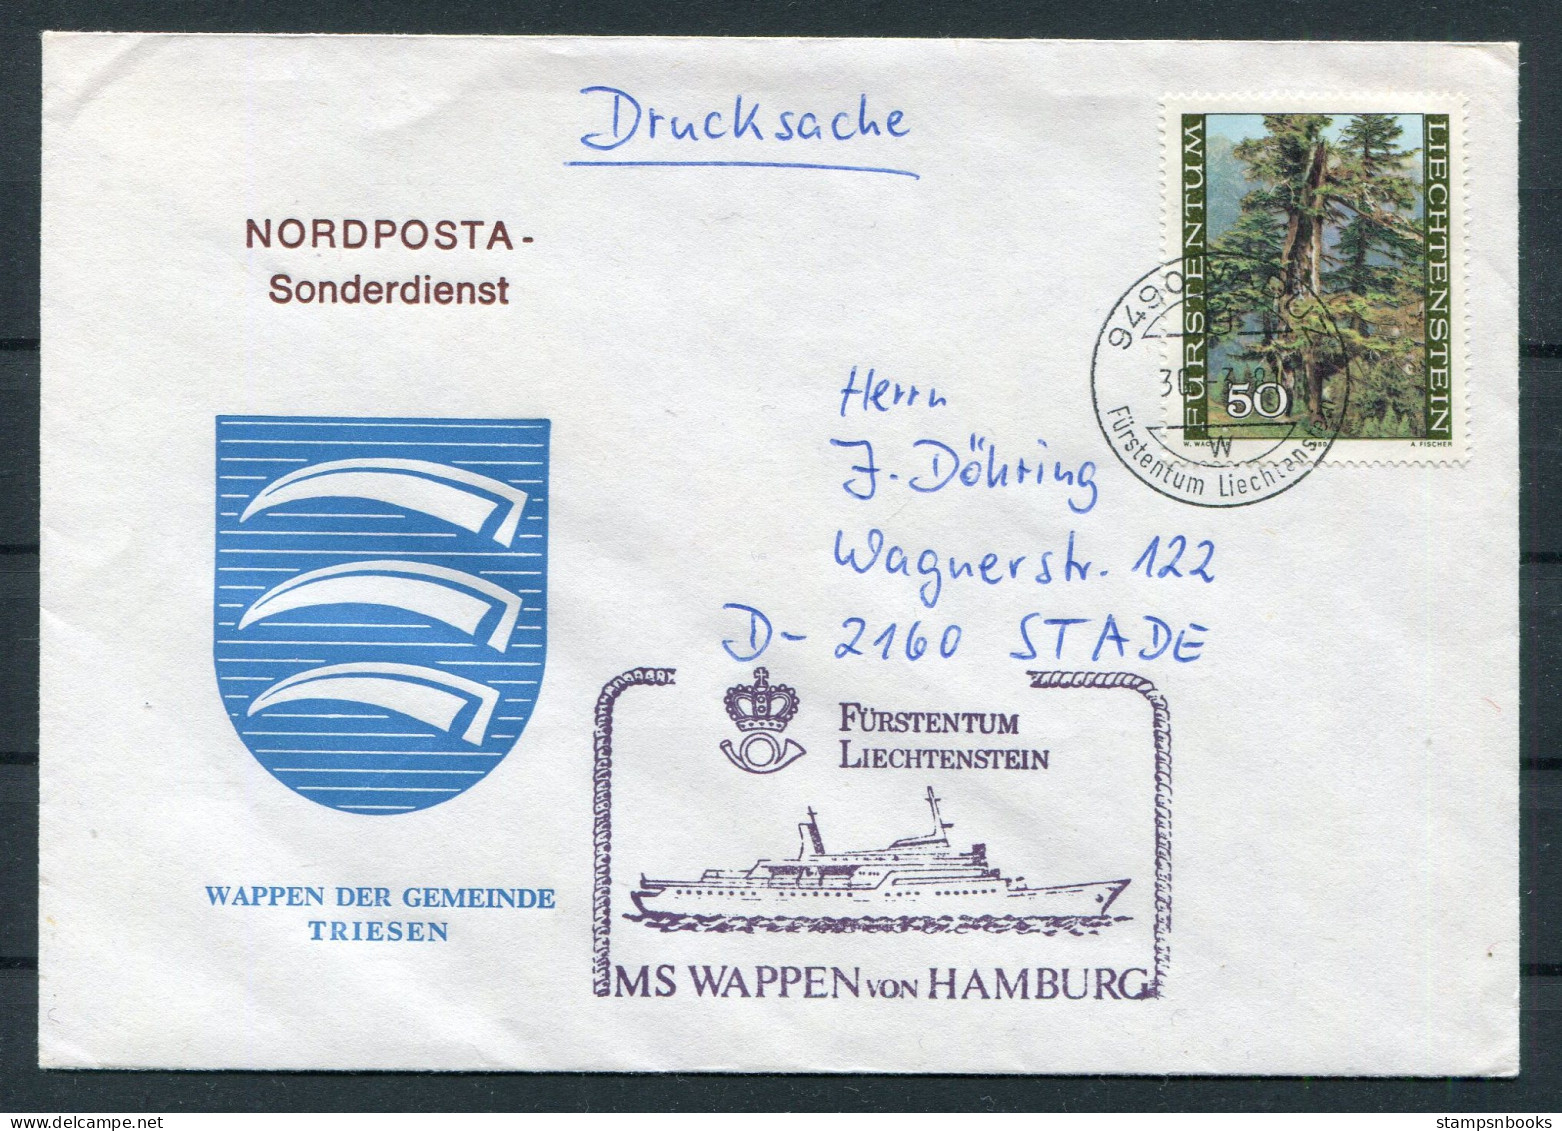 1981 Liechtenstein Vaduz Trees MS WAPPEN VON HAMBURG Ship Cover. Wappen Der Gemeinde TRIESEN Coat-of-Arms - Brieven En Documenten